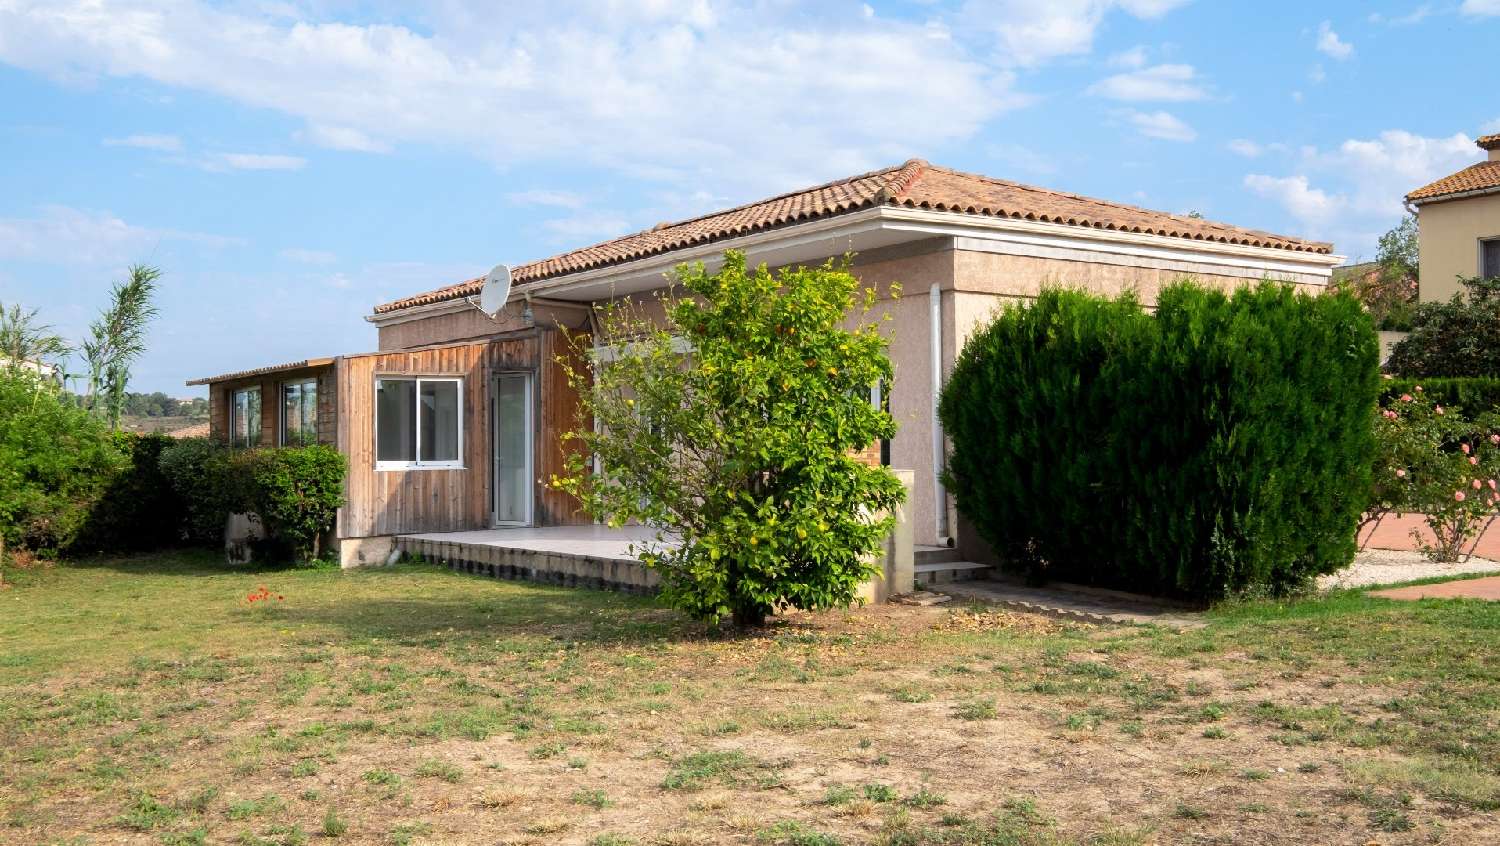  à vendre maison Lespignan Hérault 1